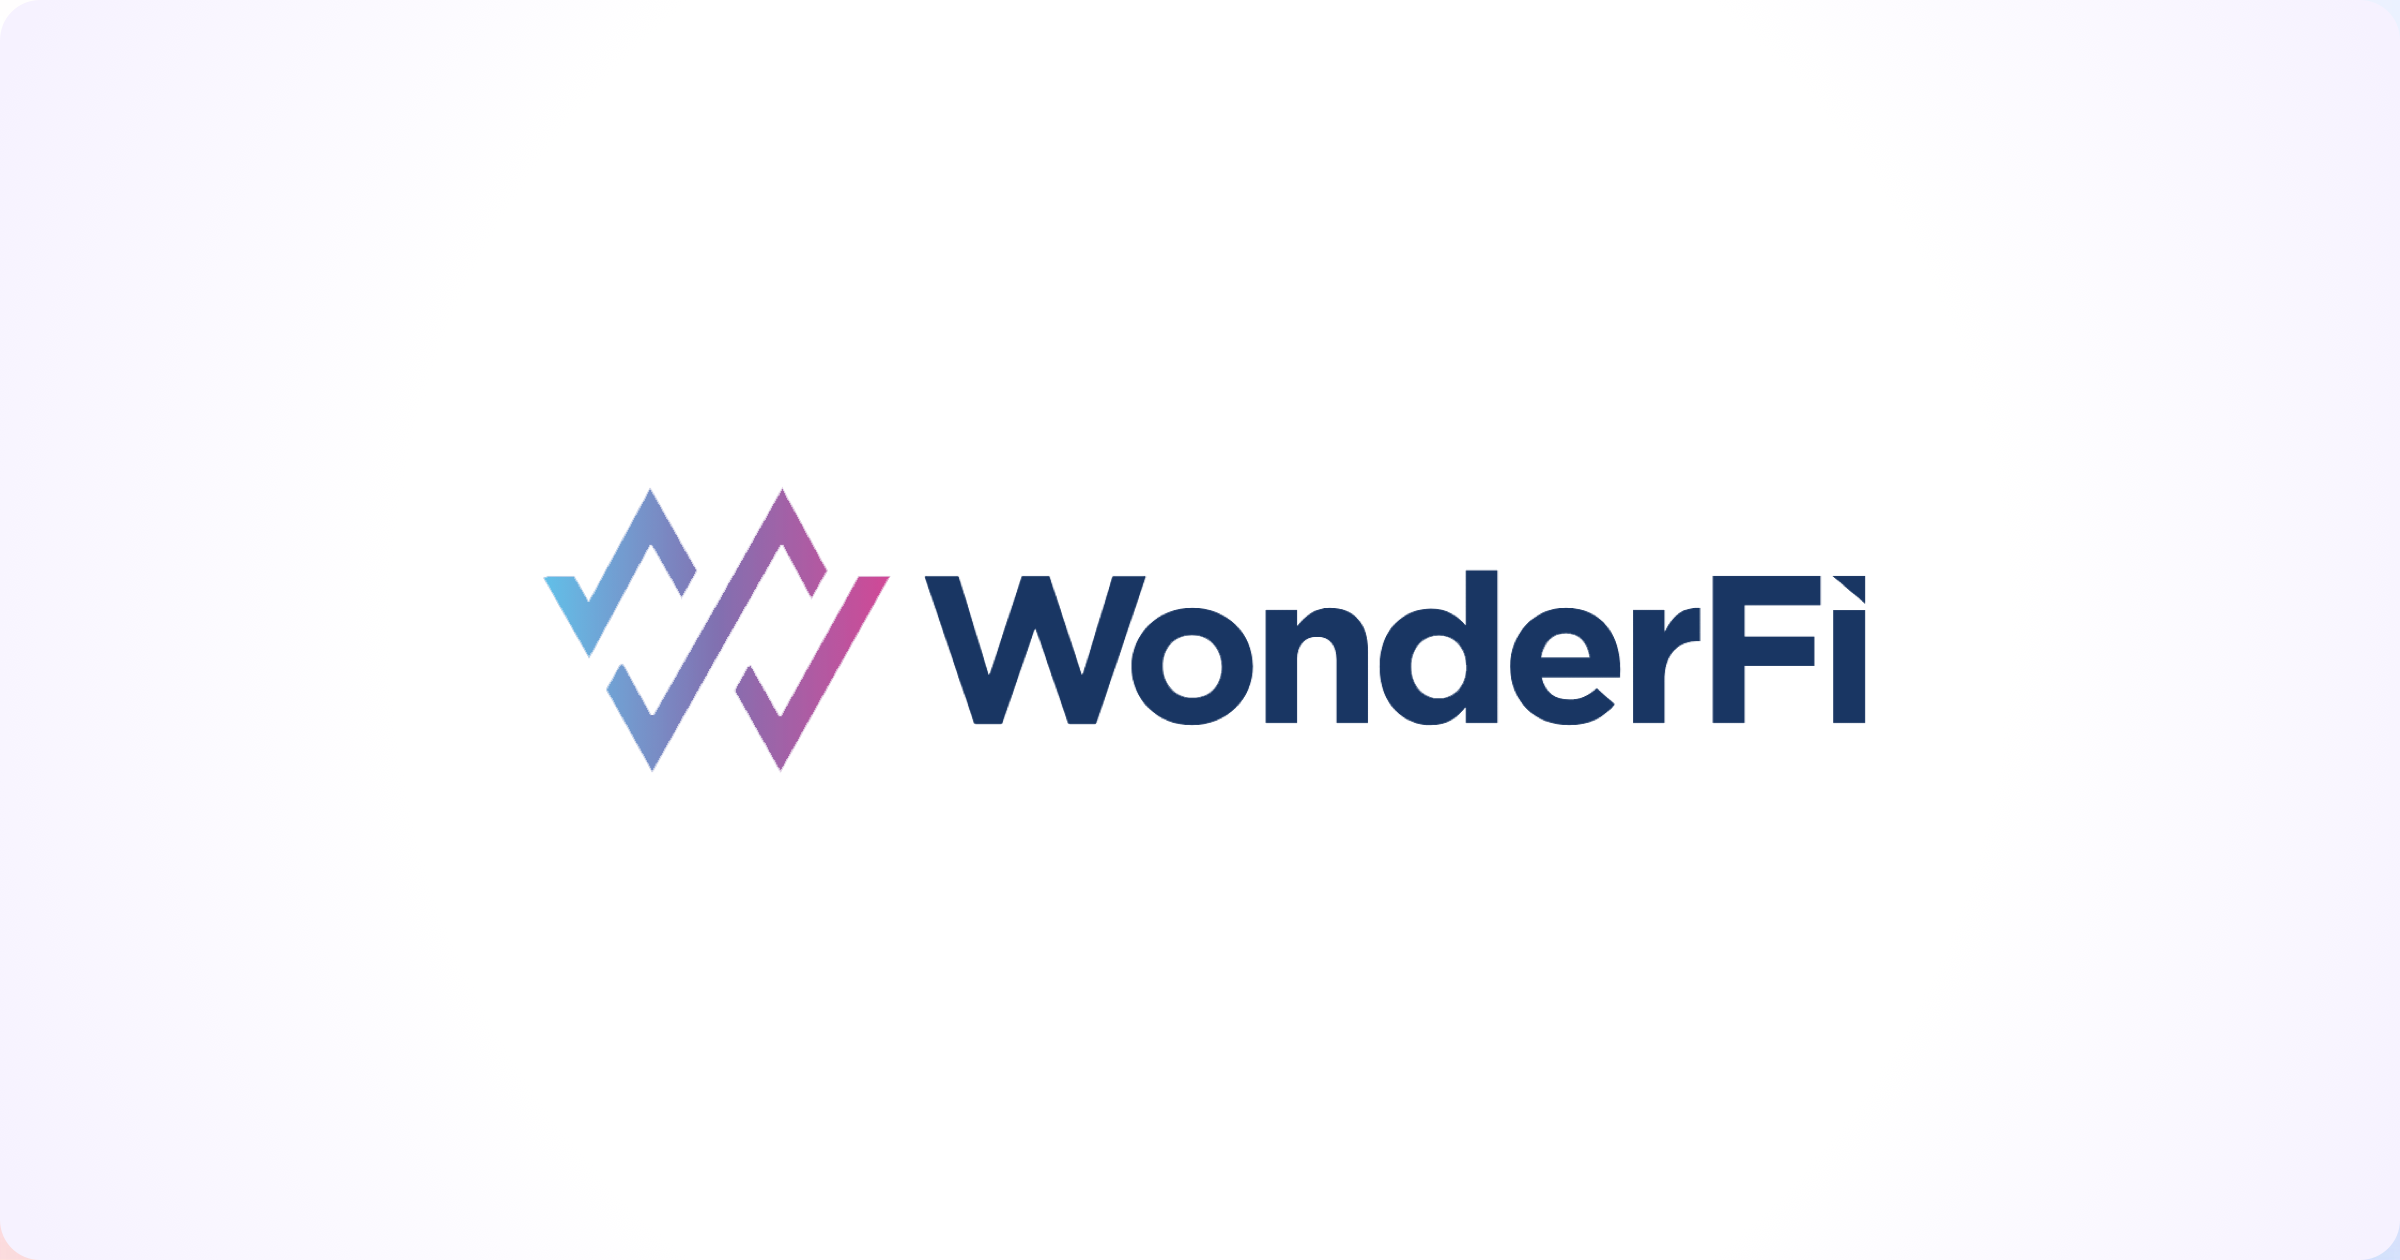 WonderFi uses USDC to bring DeFi to more people